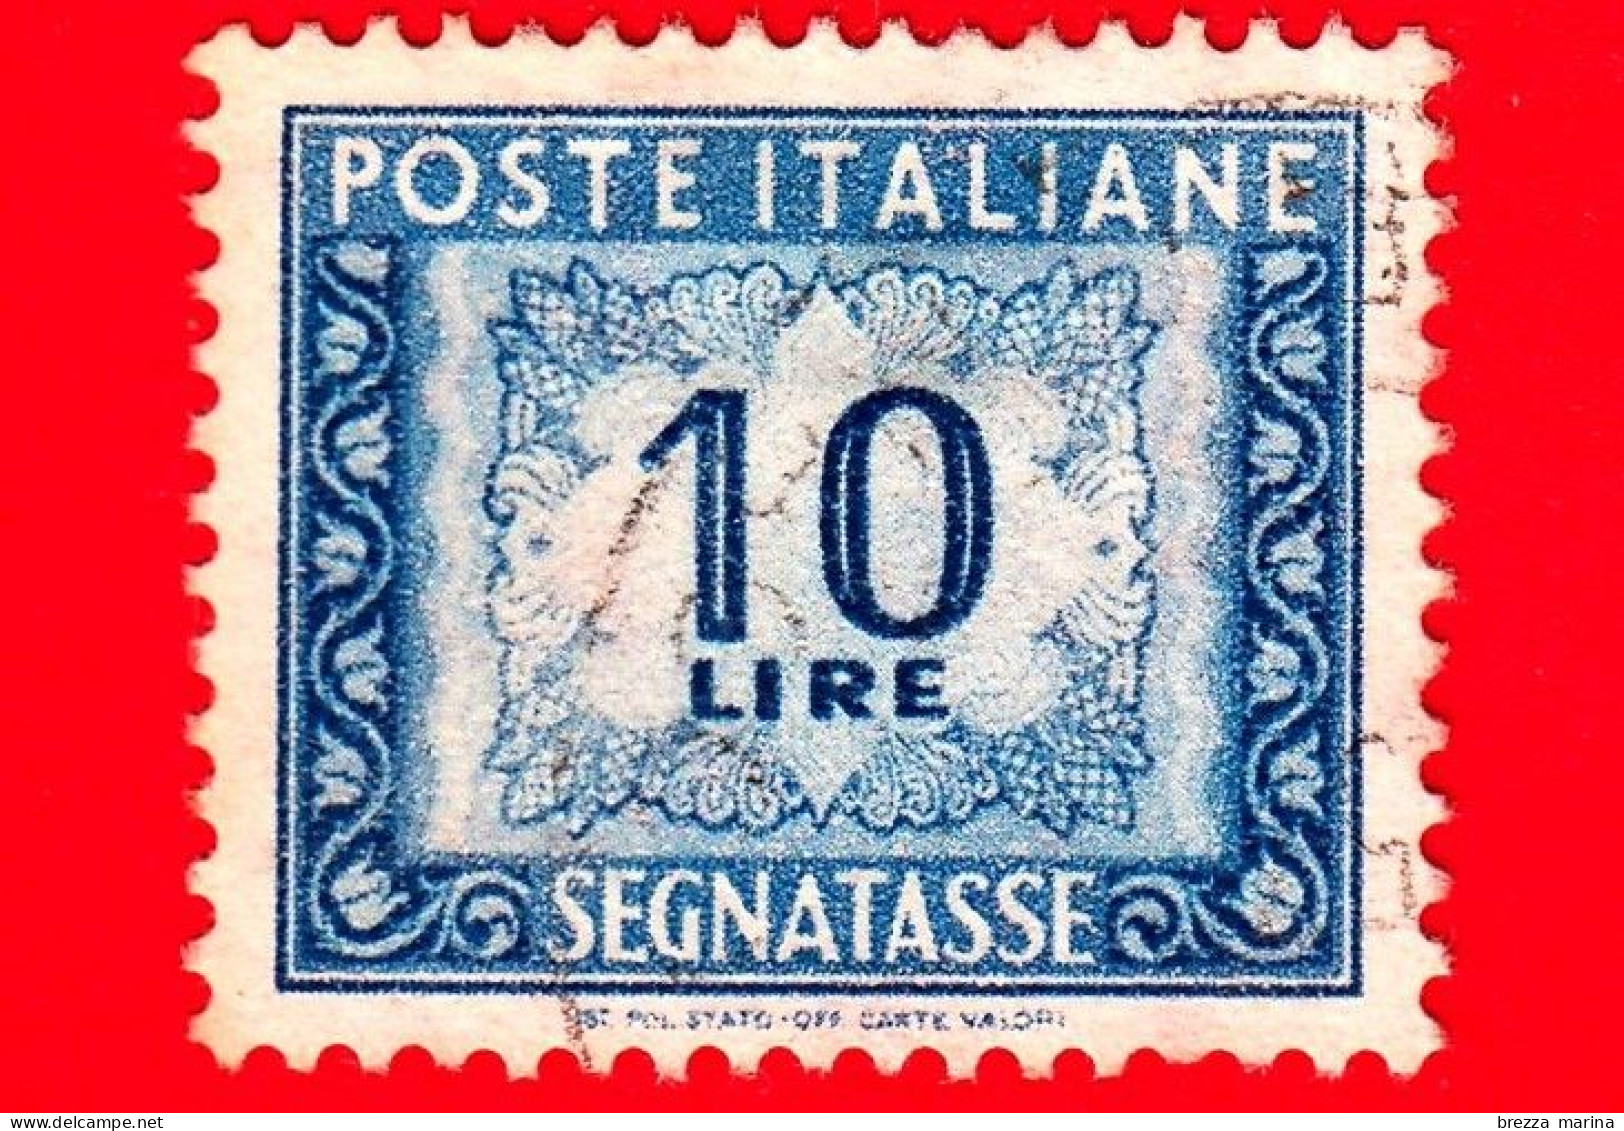 ITALIA - Usato - 1955 - Cifra E Decorazioni, Filigrana Stelle - Segnatasse - Cifra E Decorazioni - 10 L. - Portomarken